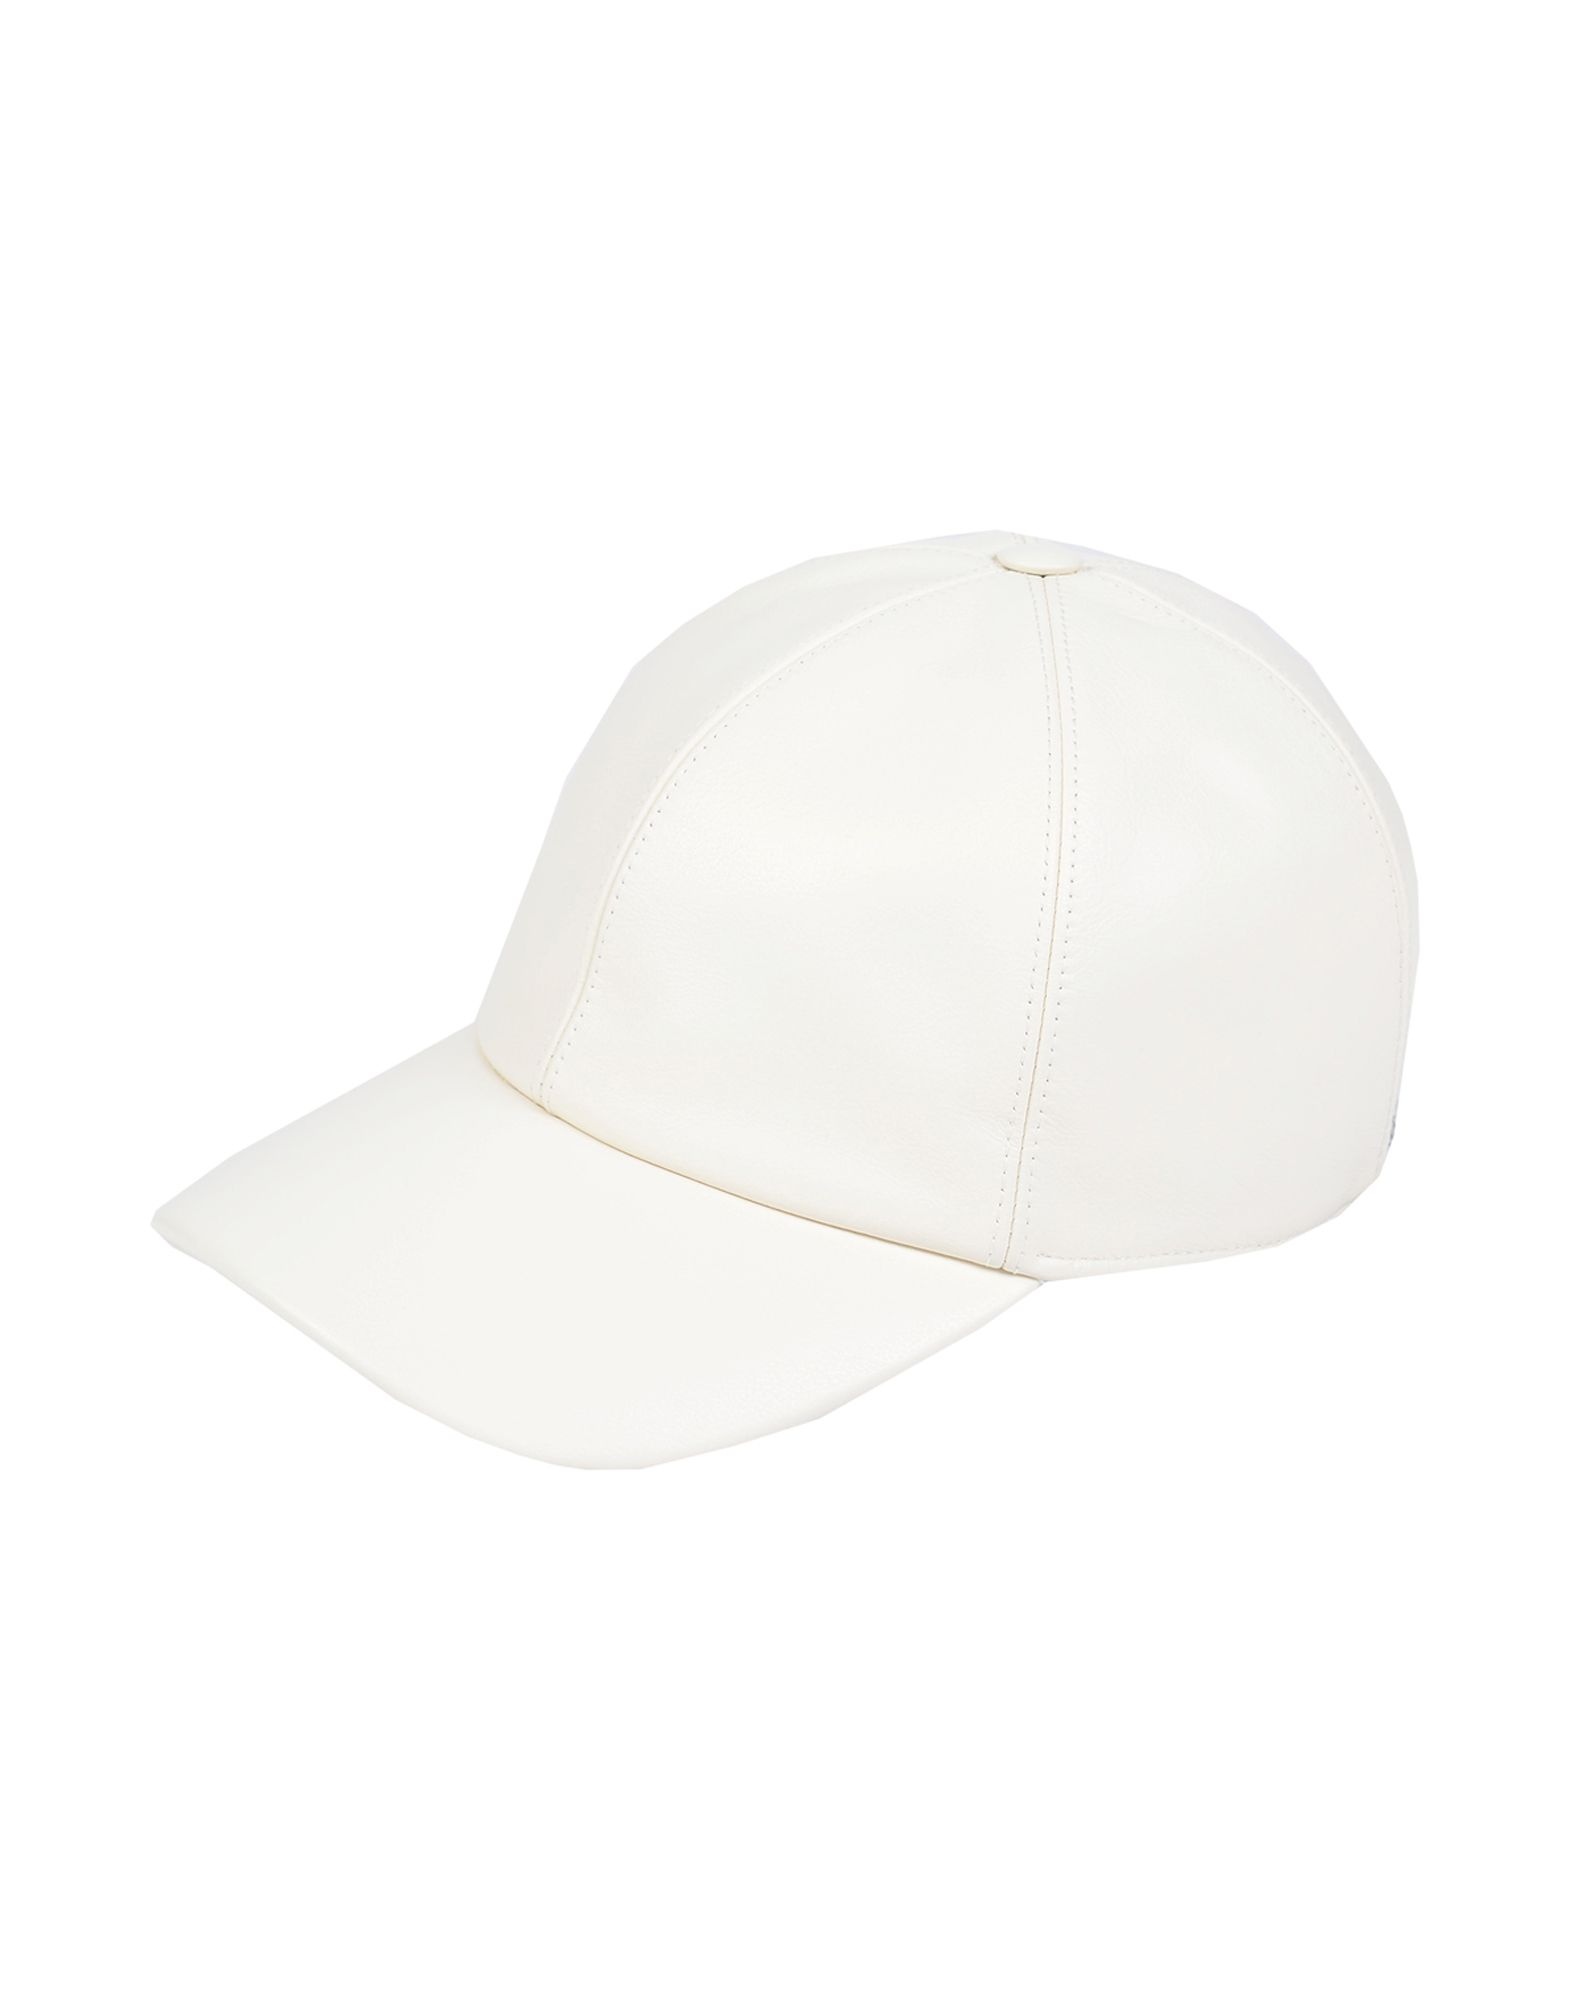 《送料無料》UMIT BENAN メンズ 帽子 ホワイト one size 革 100%